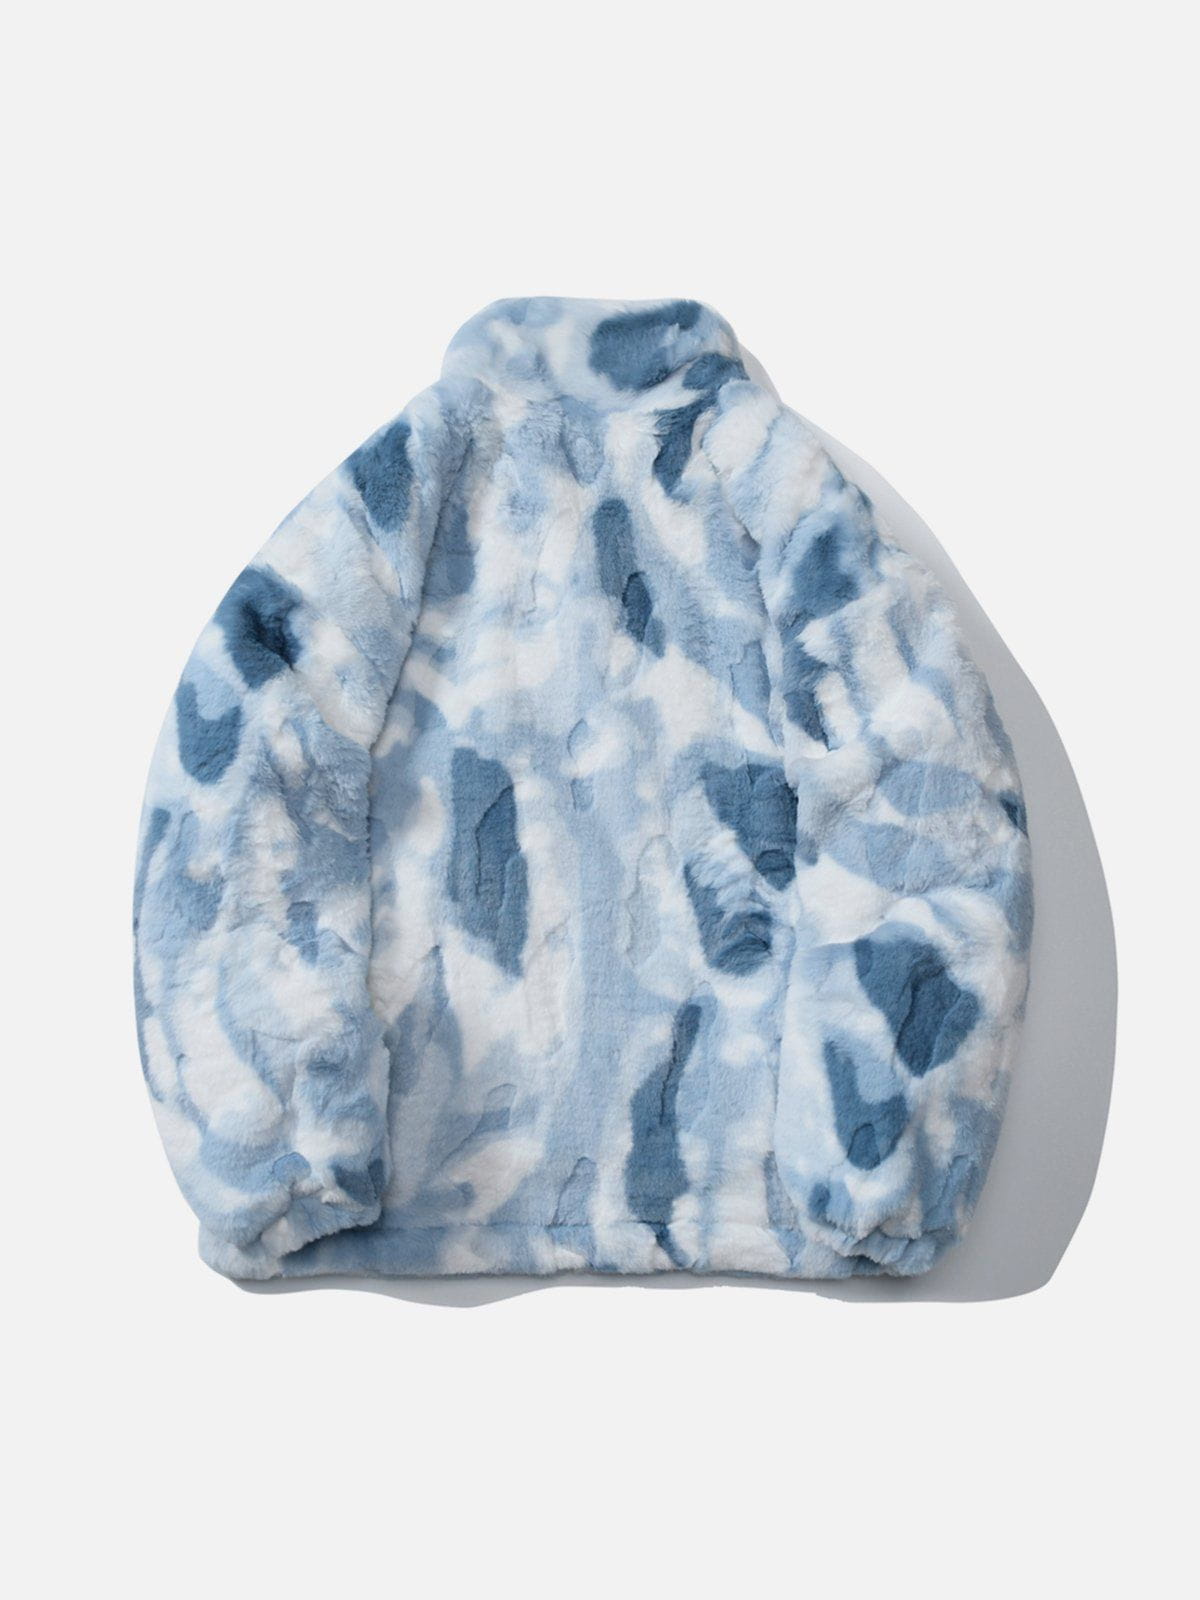 Sneakerland™ - Tie Dye Angel Bunny Label Sherpa Coat